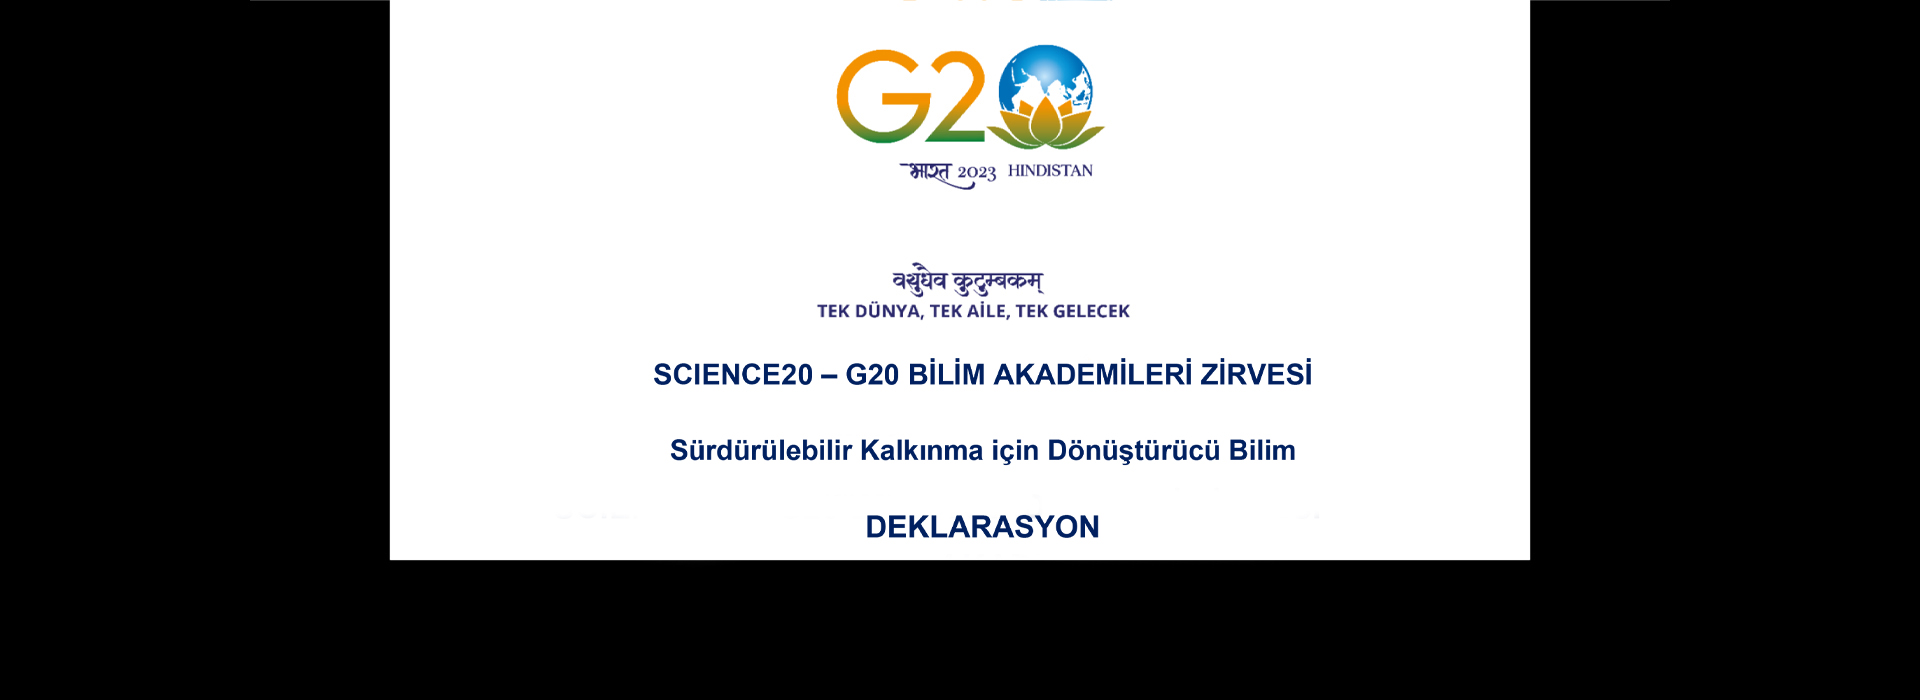 Bilim Akademilerinden G20 Liderlerine Deklarasyon